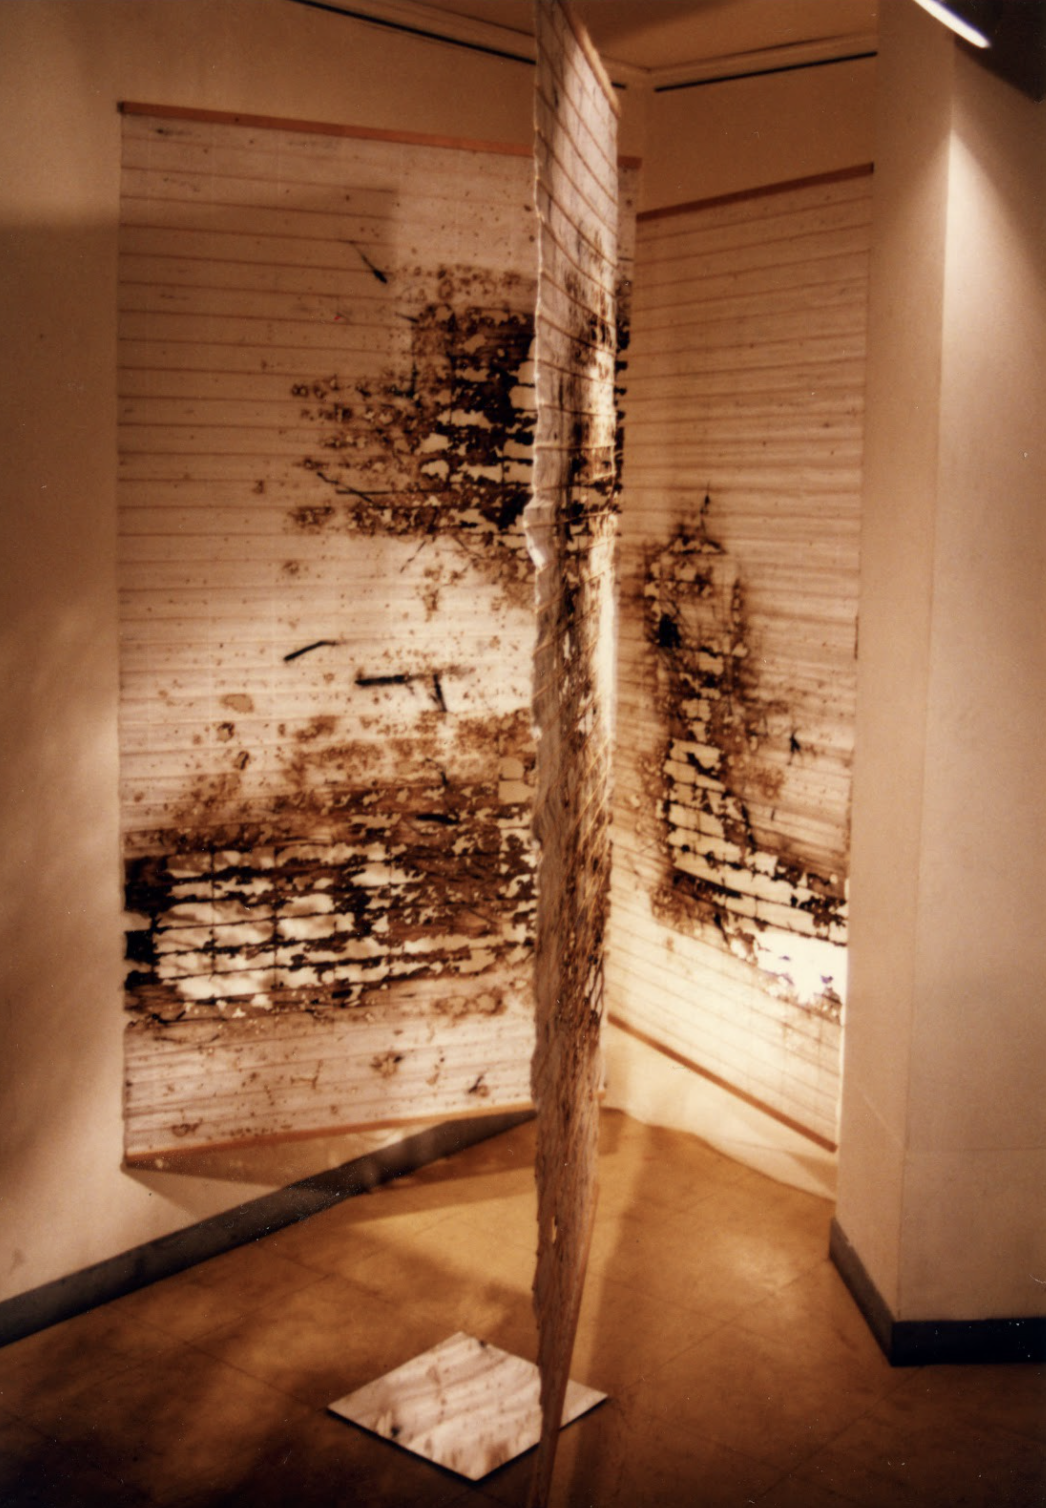 蔡国强，《空间1号》，1988。火药、紙、鏡、光悬挂图、每幅157.48 x 87.63 cm。1998年于日本装置一景，图片蔡工作室提供